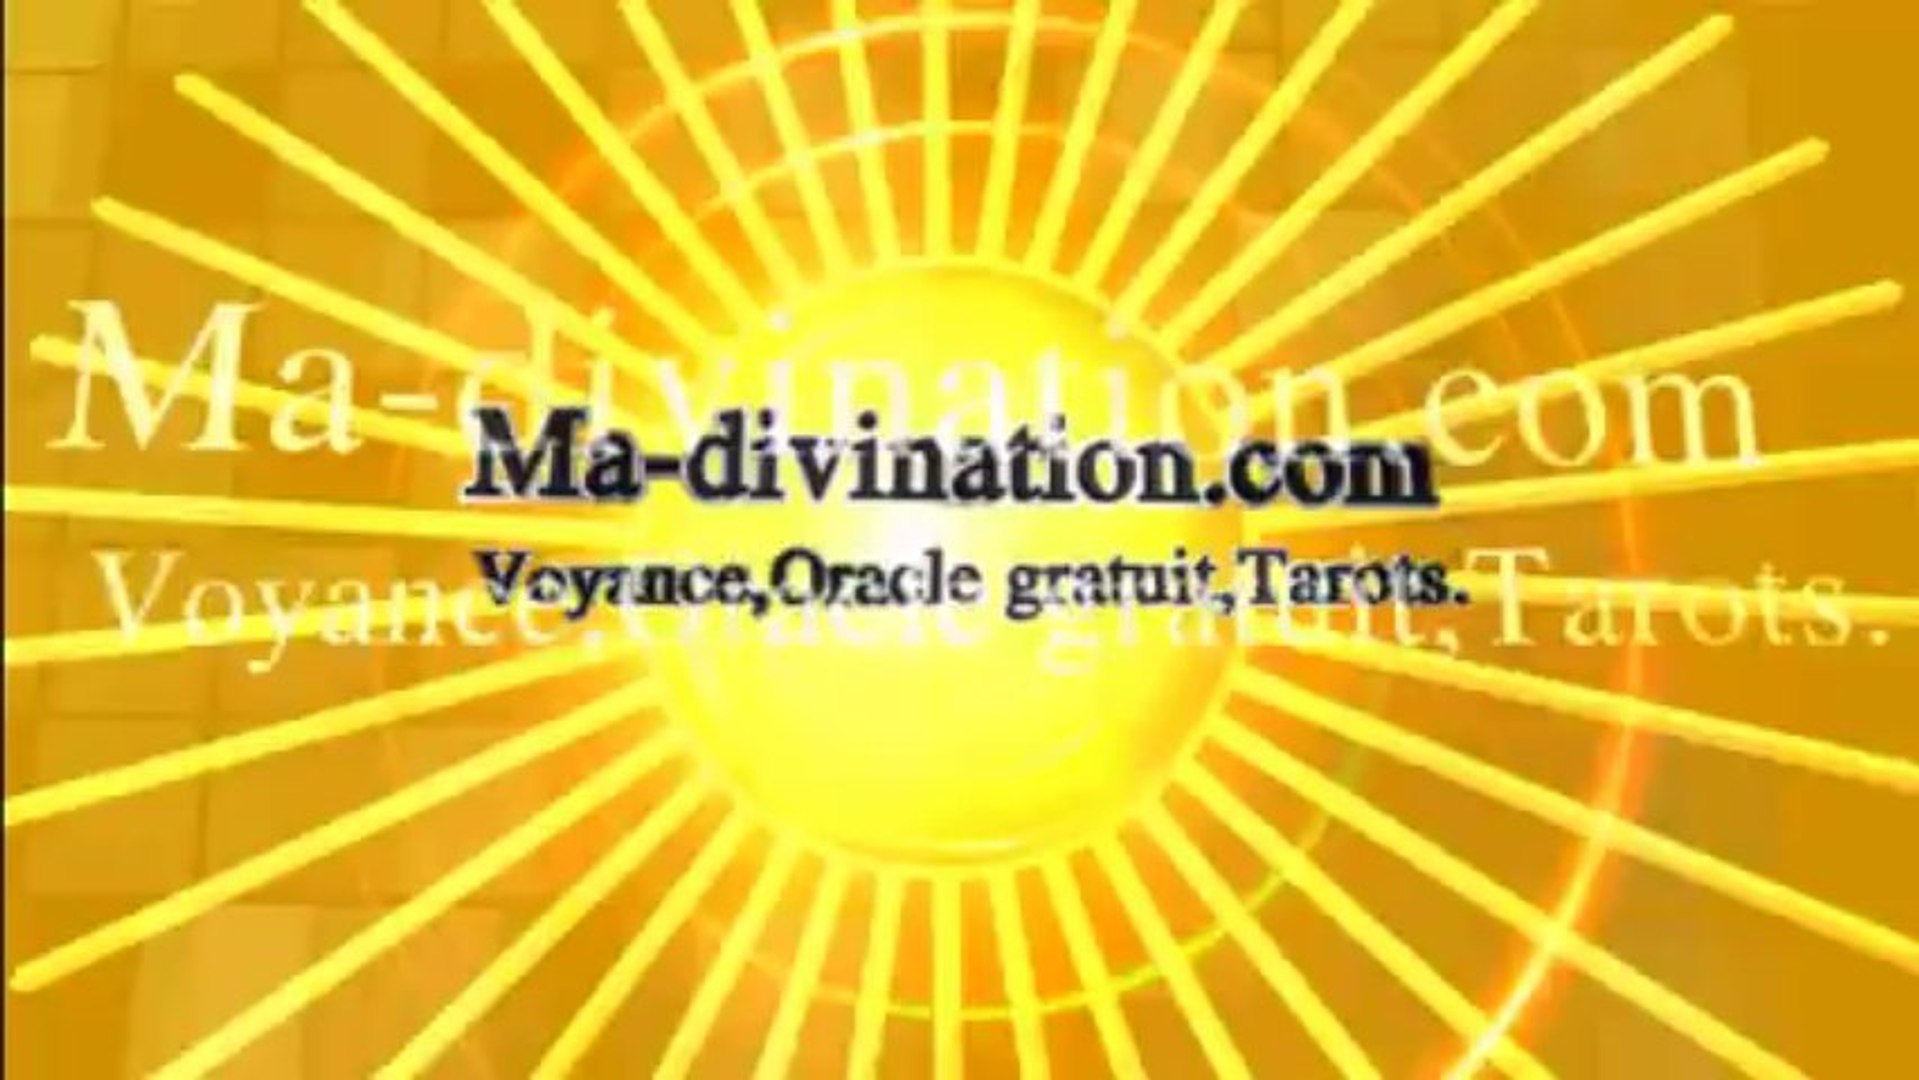 Voyance en ligne - Voyance gratuite - tirage gratuit des oracles et tarots  - Vidéo Dailymotion